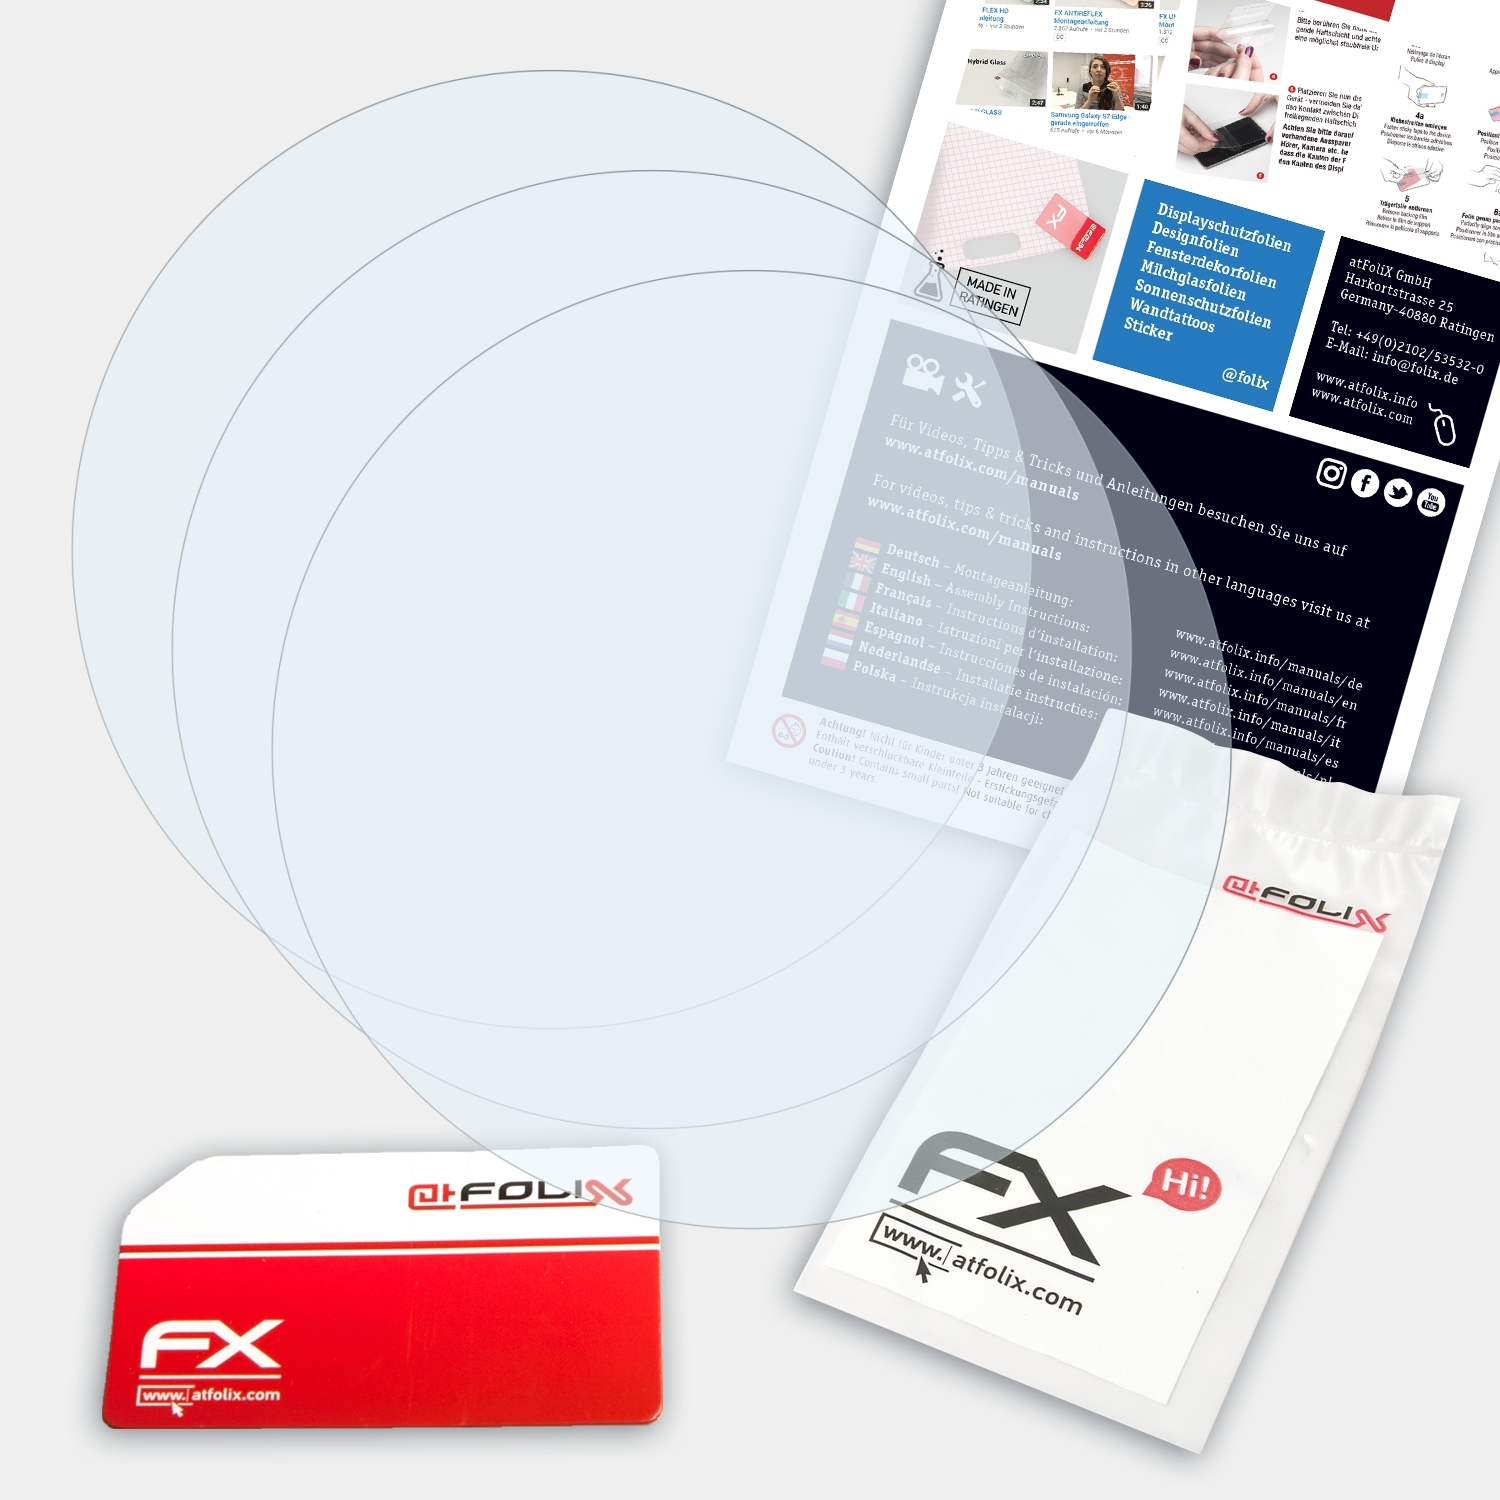 ATFOLIX Descent 3x Garmin FX-Clear Mk2i) Displayschutz(für